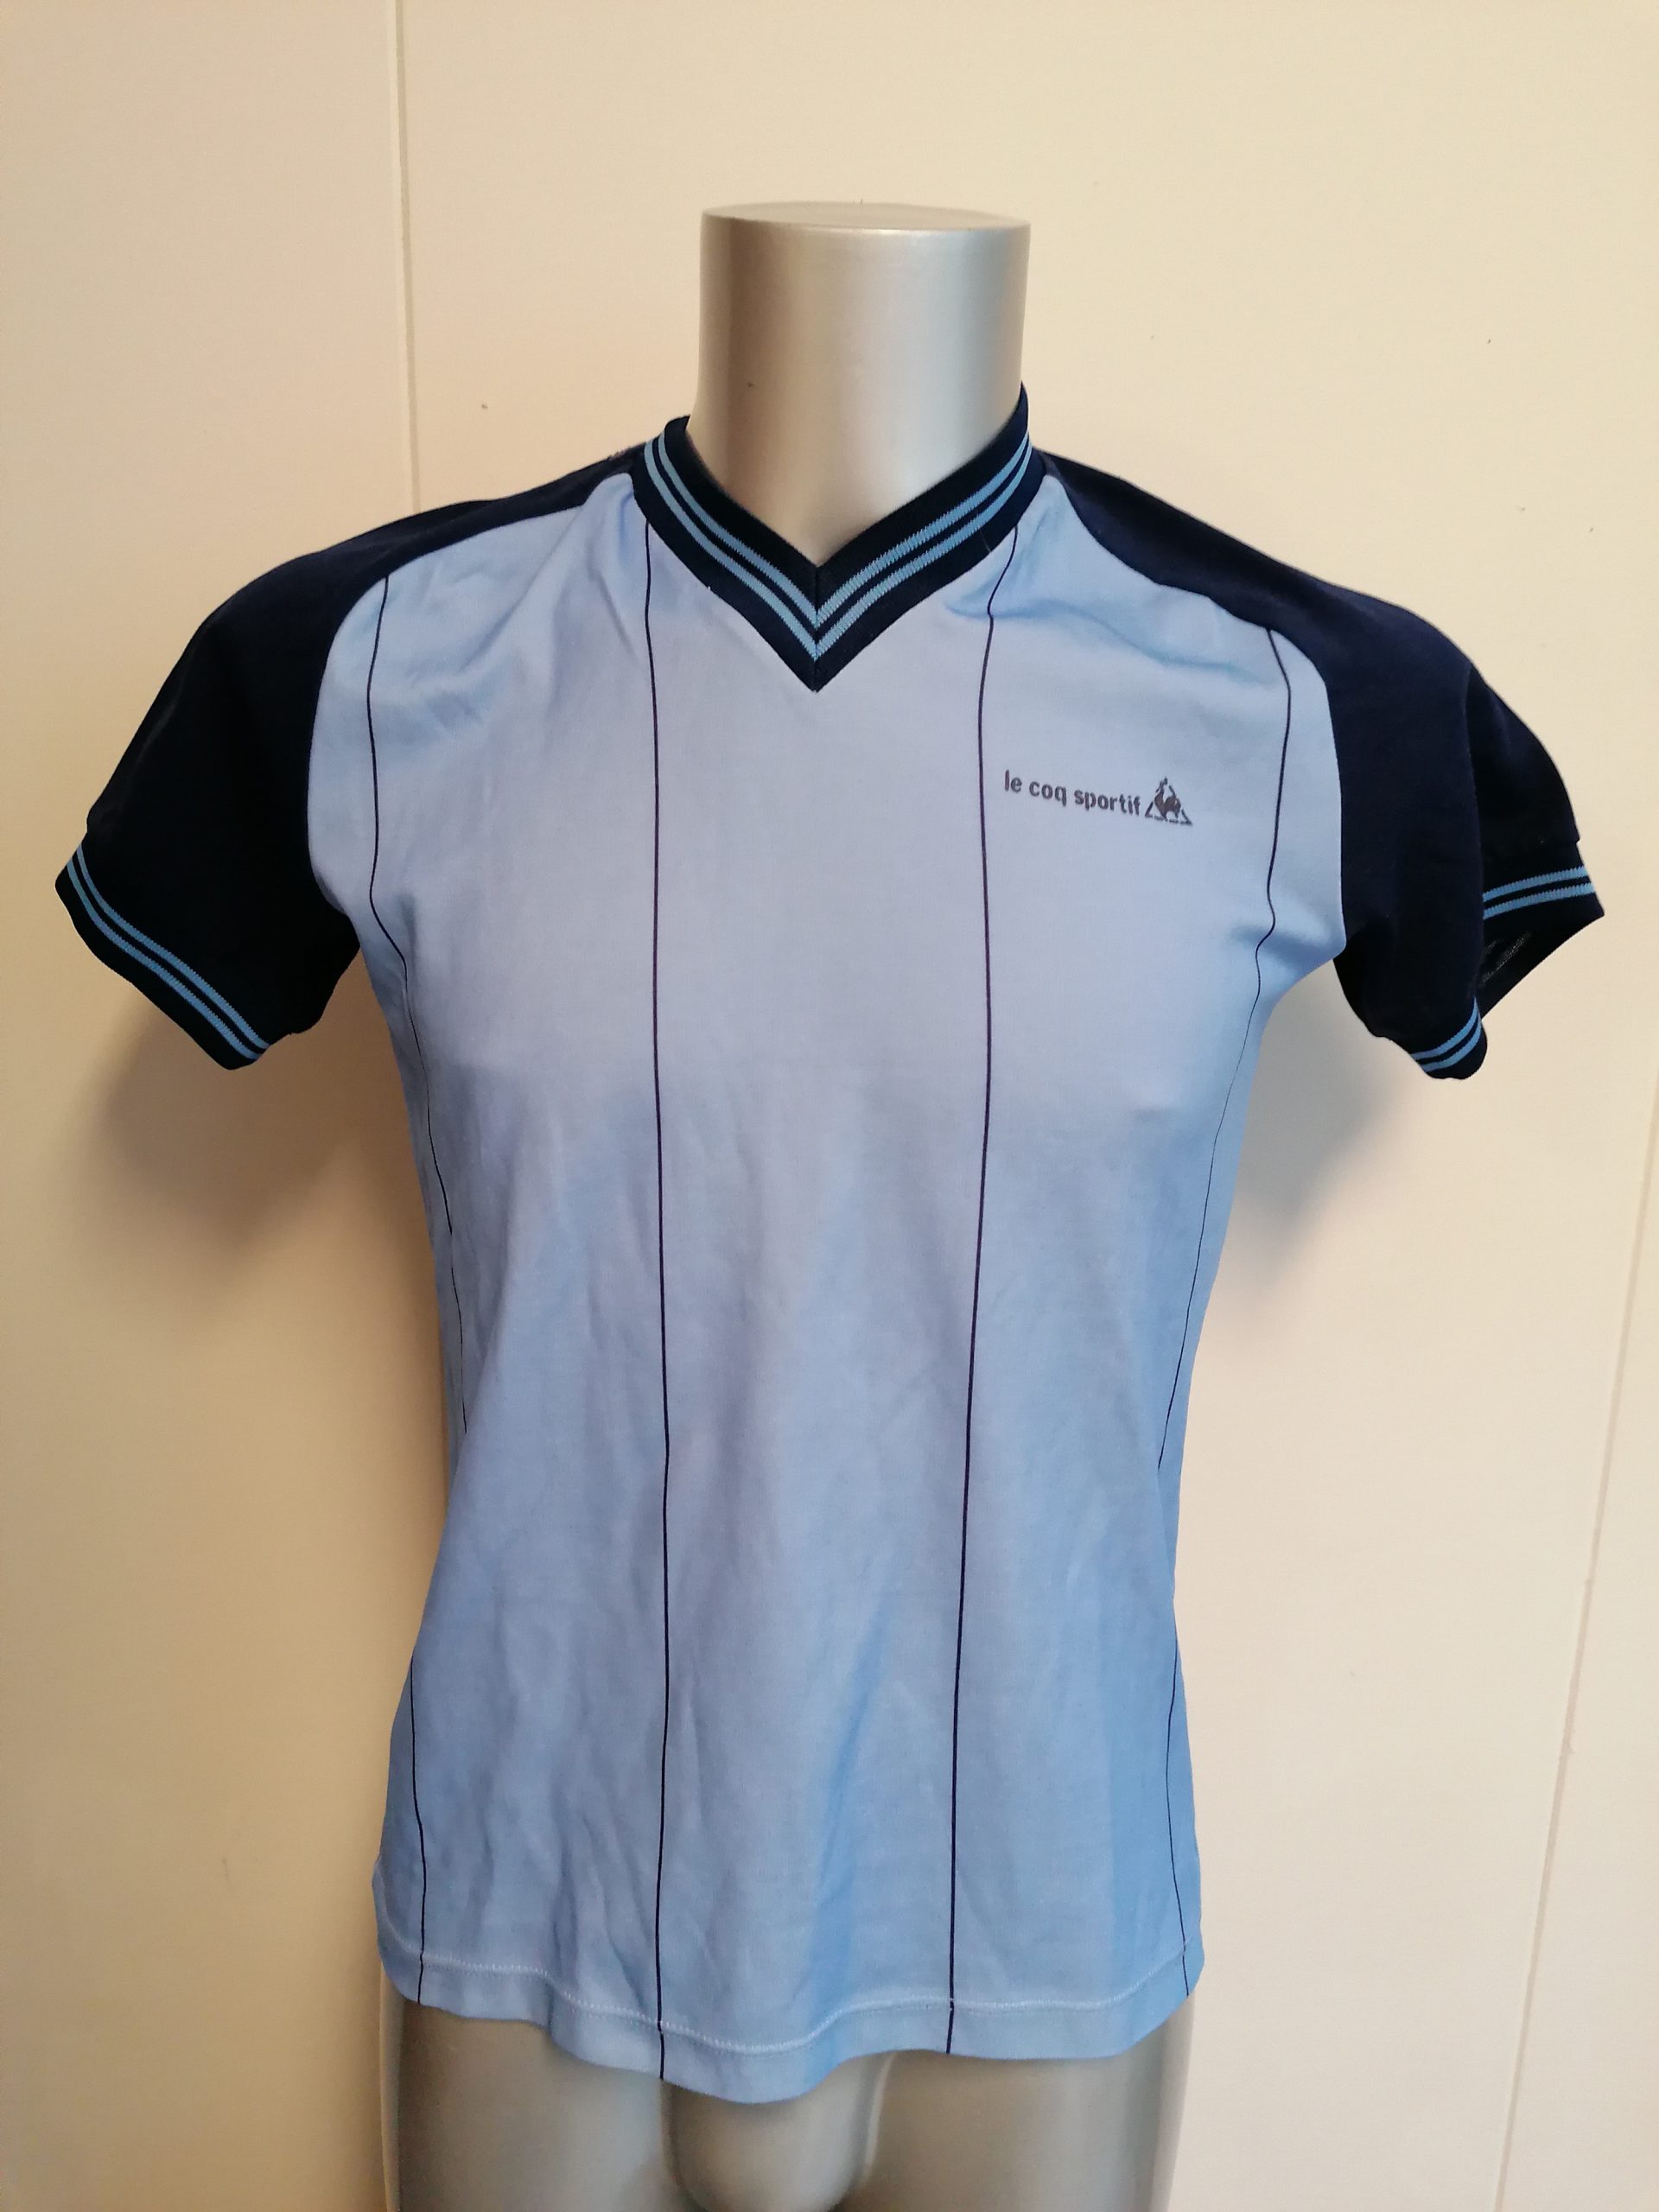 Vintage Le Coq Sportif 1980ies blue shirt maillot size S